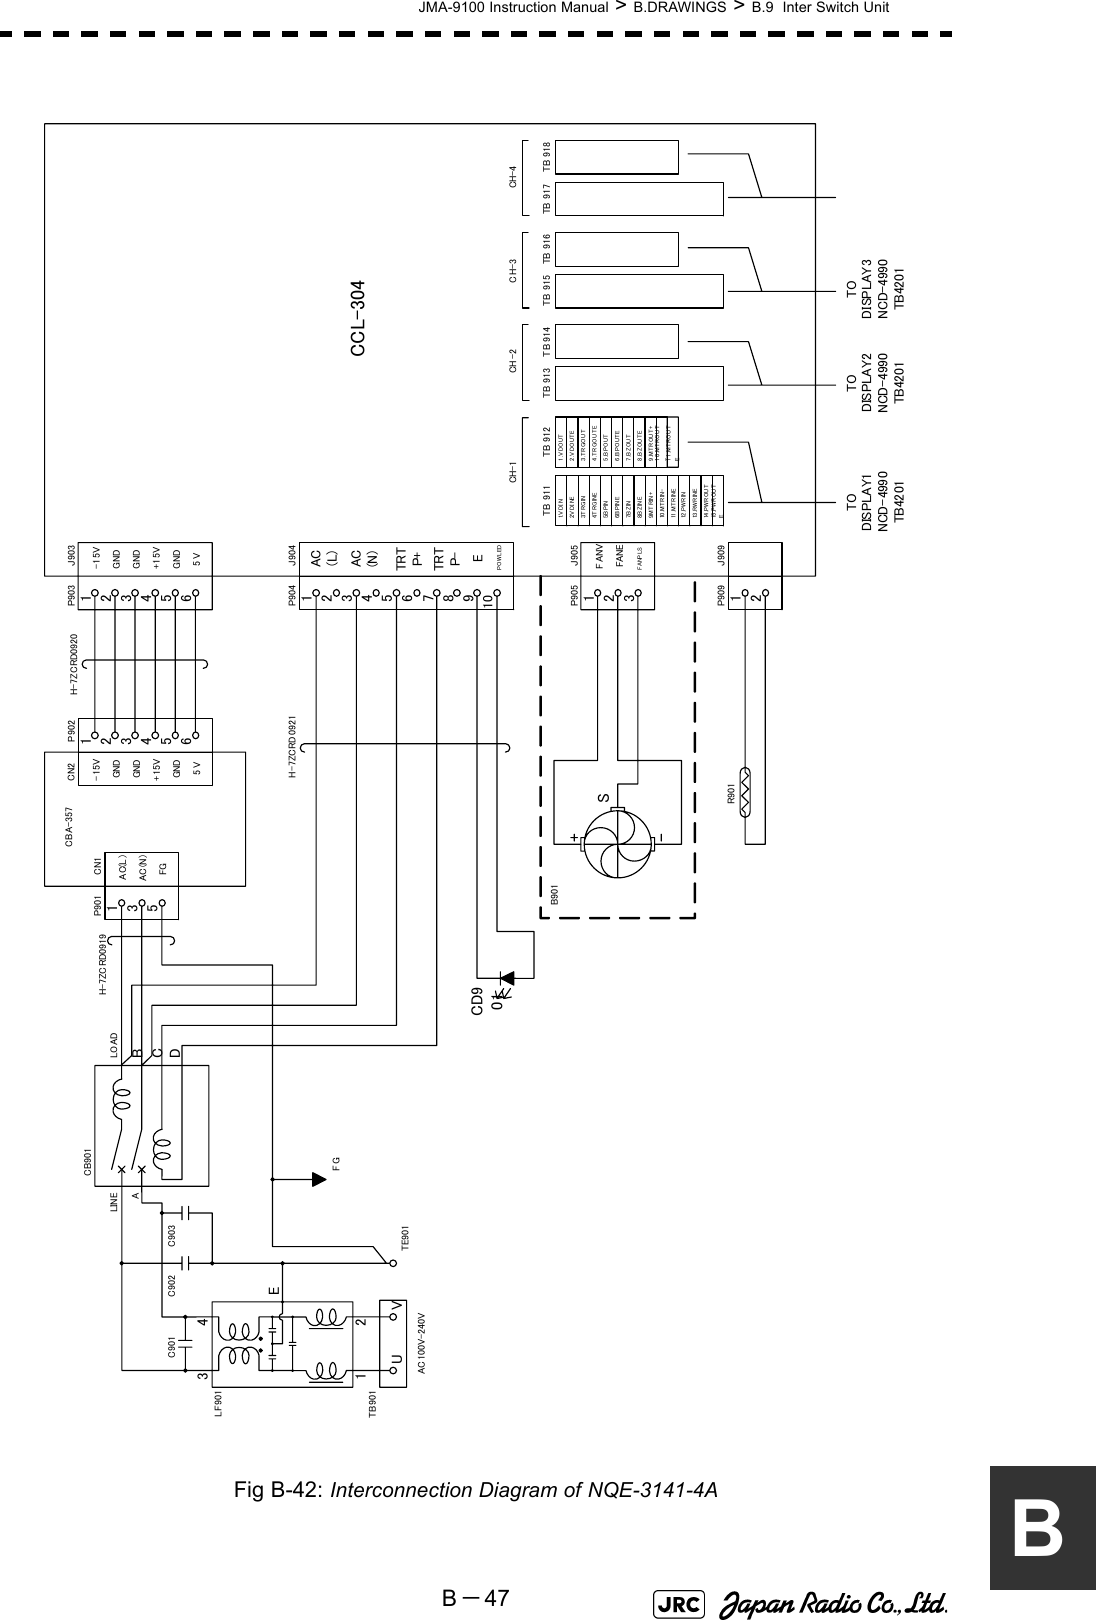 JMA-9100 Instruction Manual &gt; B.DRAWINGS &gt; B.9  Inter Switch UnitB－47BFig B-42: Interconnection Diagram of NQE-3141-4A11.MTROUTE10.MTROUT-9.MTROUT+8.BZOUTE7.BZOUT5.BPOUT6.BPOUTE2.VDOUTE3.TRGOUT4.TRGOUTE1.VDOUT15 . PW R OU TE14 . PW R OU T13 . RW R IN E12 . PW R IN11 . M T R I NE9. M T R IN +10 . M T R I N-6.B PIN E7. B Z IN8. B Z IN E5.B PIN4.T R G INE3.T R G IN2.V DI NE1.V DI NCH-1TB 911 TB 912 TB 913 TB 914 TB 915 TB  916 TB 917 TB 91812CCL-304TODISPLAY1NCD-4990TB4201TODISPLAY2NCD-4990TB4201TODISPLAY3NCD-4990TB4201CH -2 CH-3 CH-43J90312345612345678910J904J90512J909-15VGNDGNDGND5 V+15VAC(L)AC(N)TRTP+EPO WL EDTRTP-FANVFANEFANP LS123456-15VGNDGNDGND5 V+15VP903P902135AC(L )AC(N)FGSP904P905P909CN2CN1P901LOADBCDALINE1234UVETB901AC100V-240VTE901FGCD901R901H-7ZCRD0920H-7ZCRD0921H-7ZCRD0919CBA-357B901CB901C901 C902 C903LF901